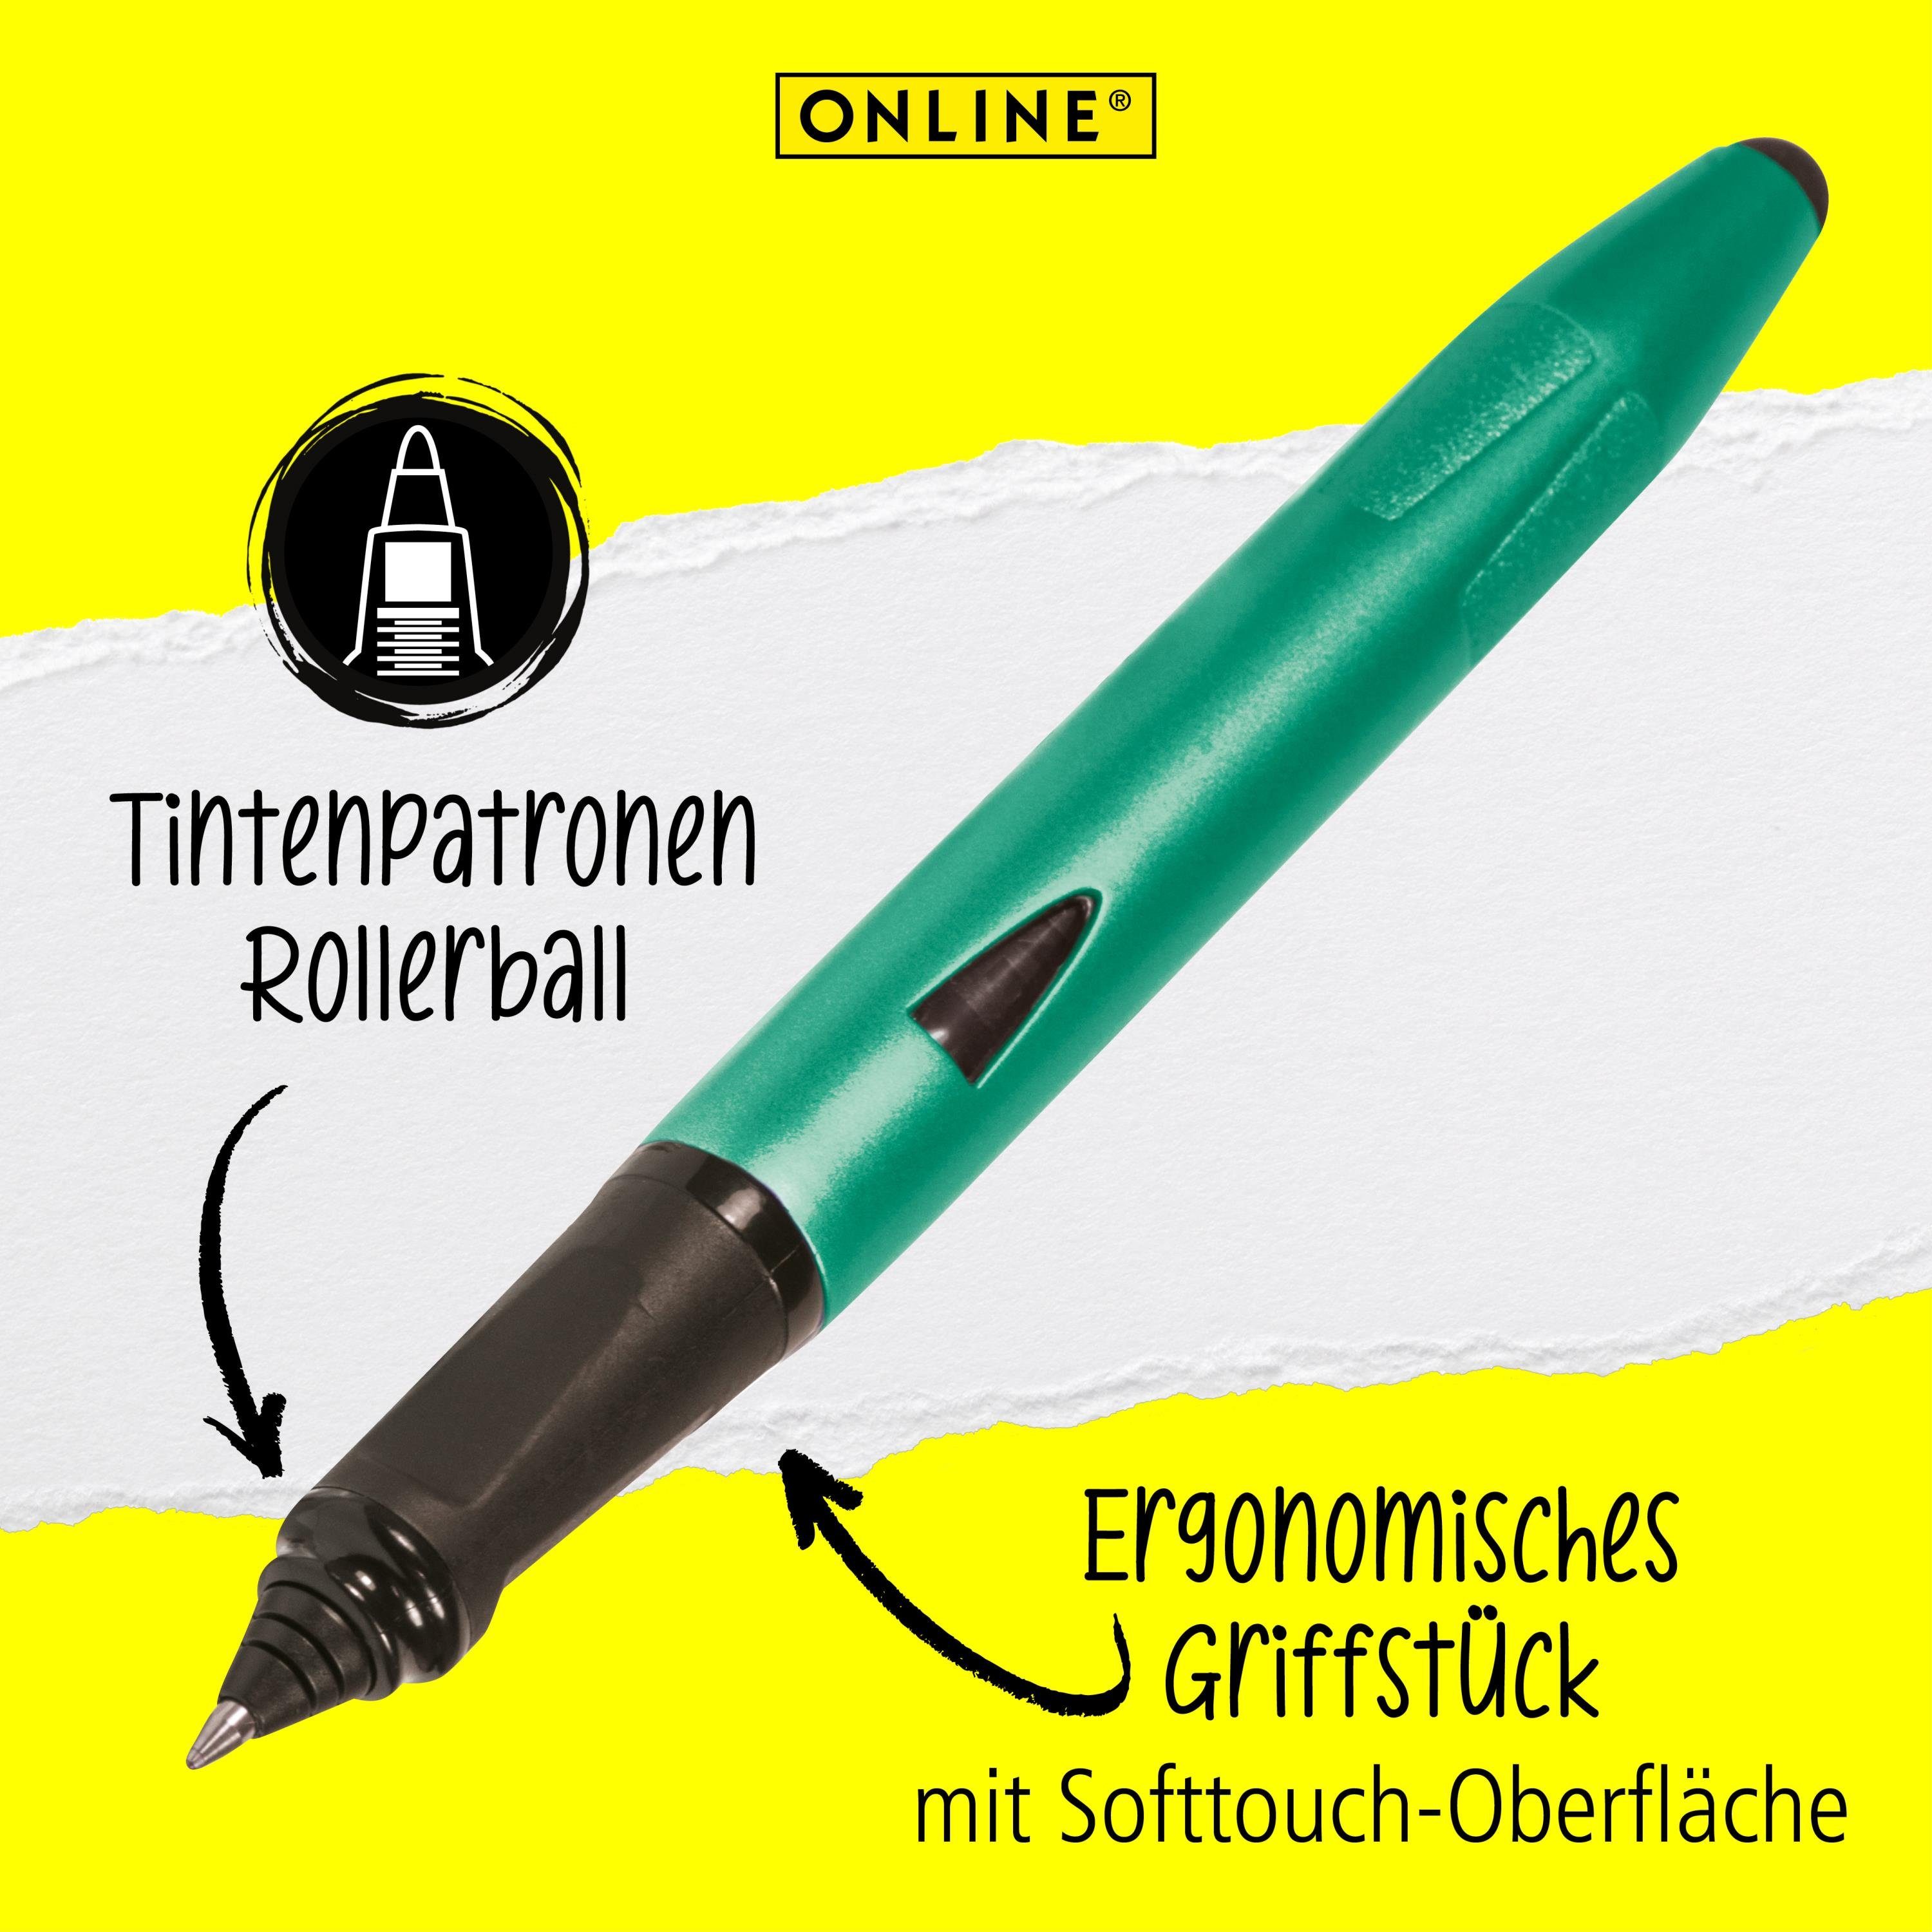 Online Switch ergonomisch, Schule, Pen ideal mit für Plus, Tintenroller Grün die Stylus-Tip